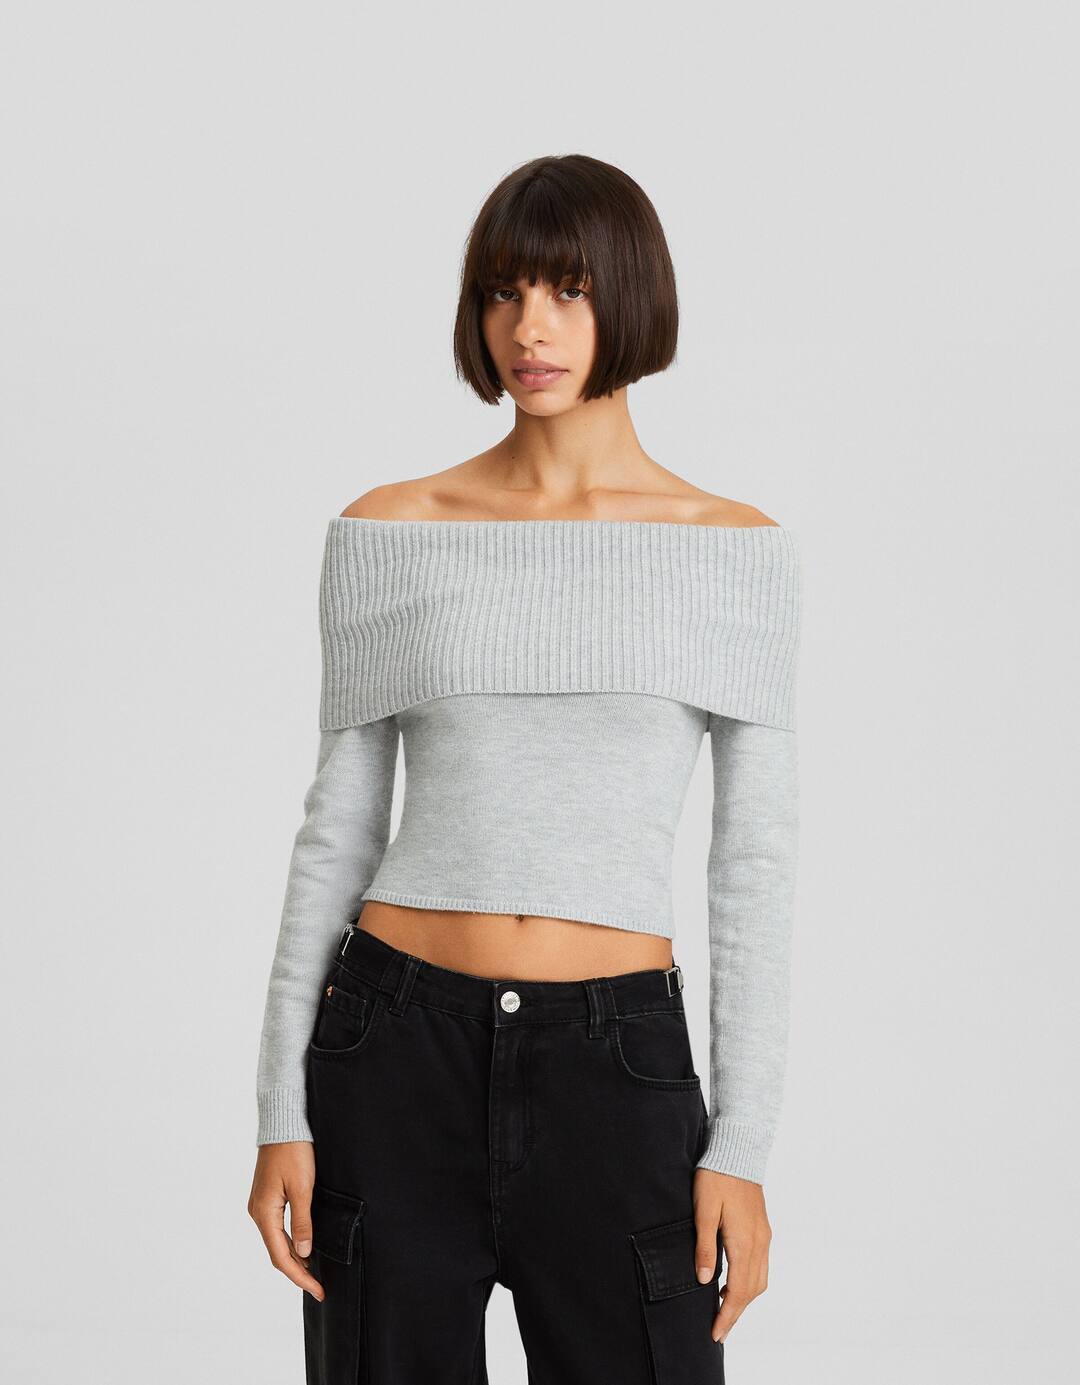 Bardot sweater